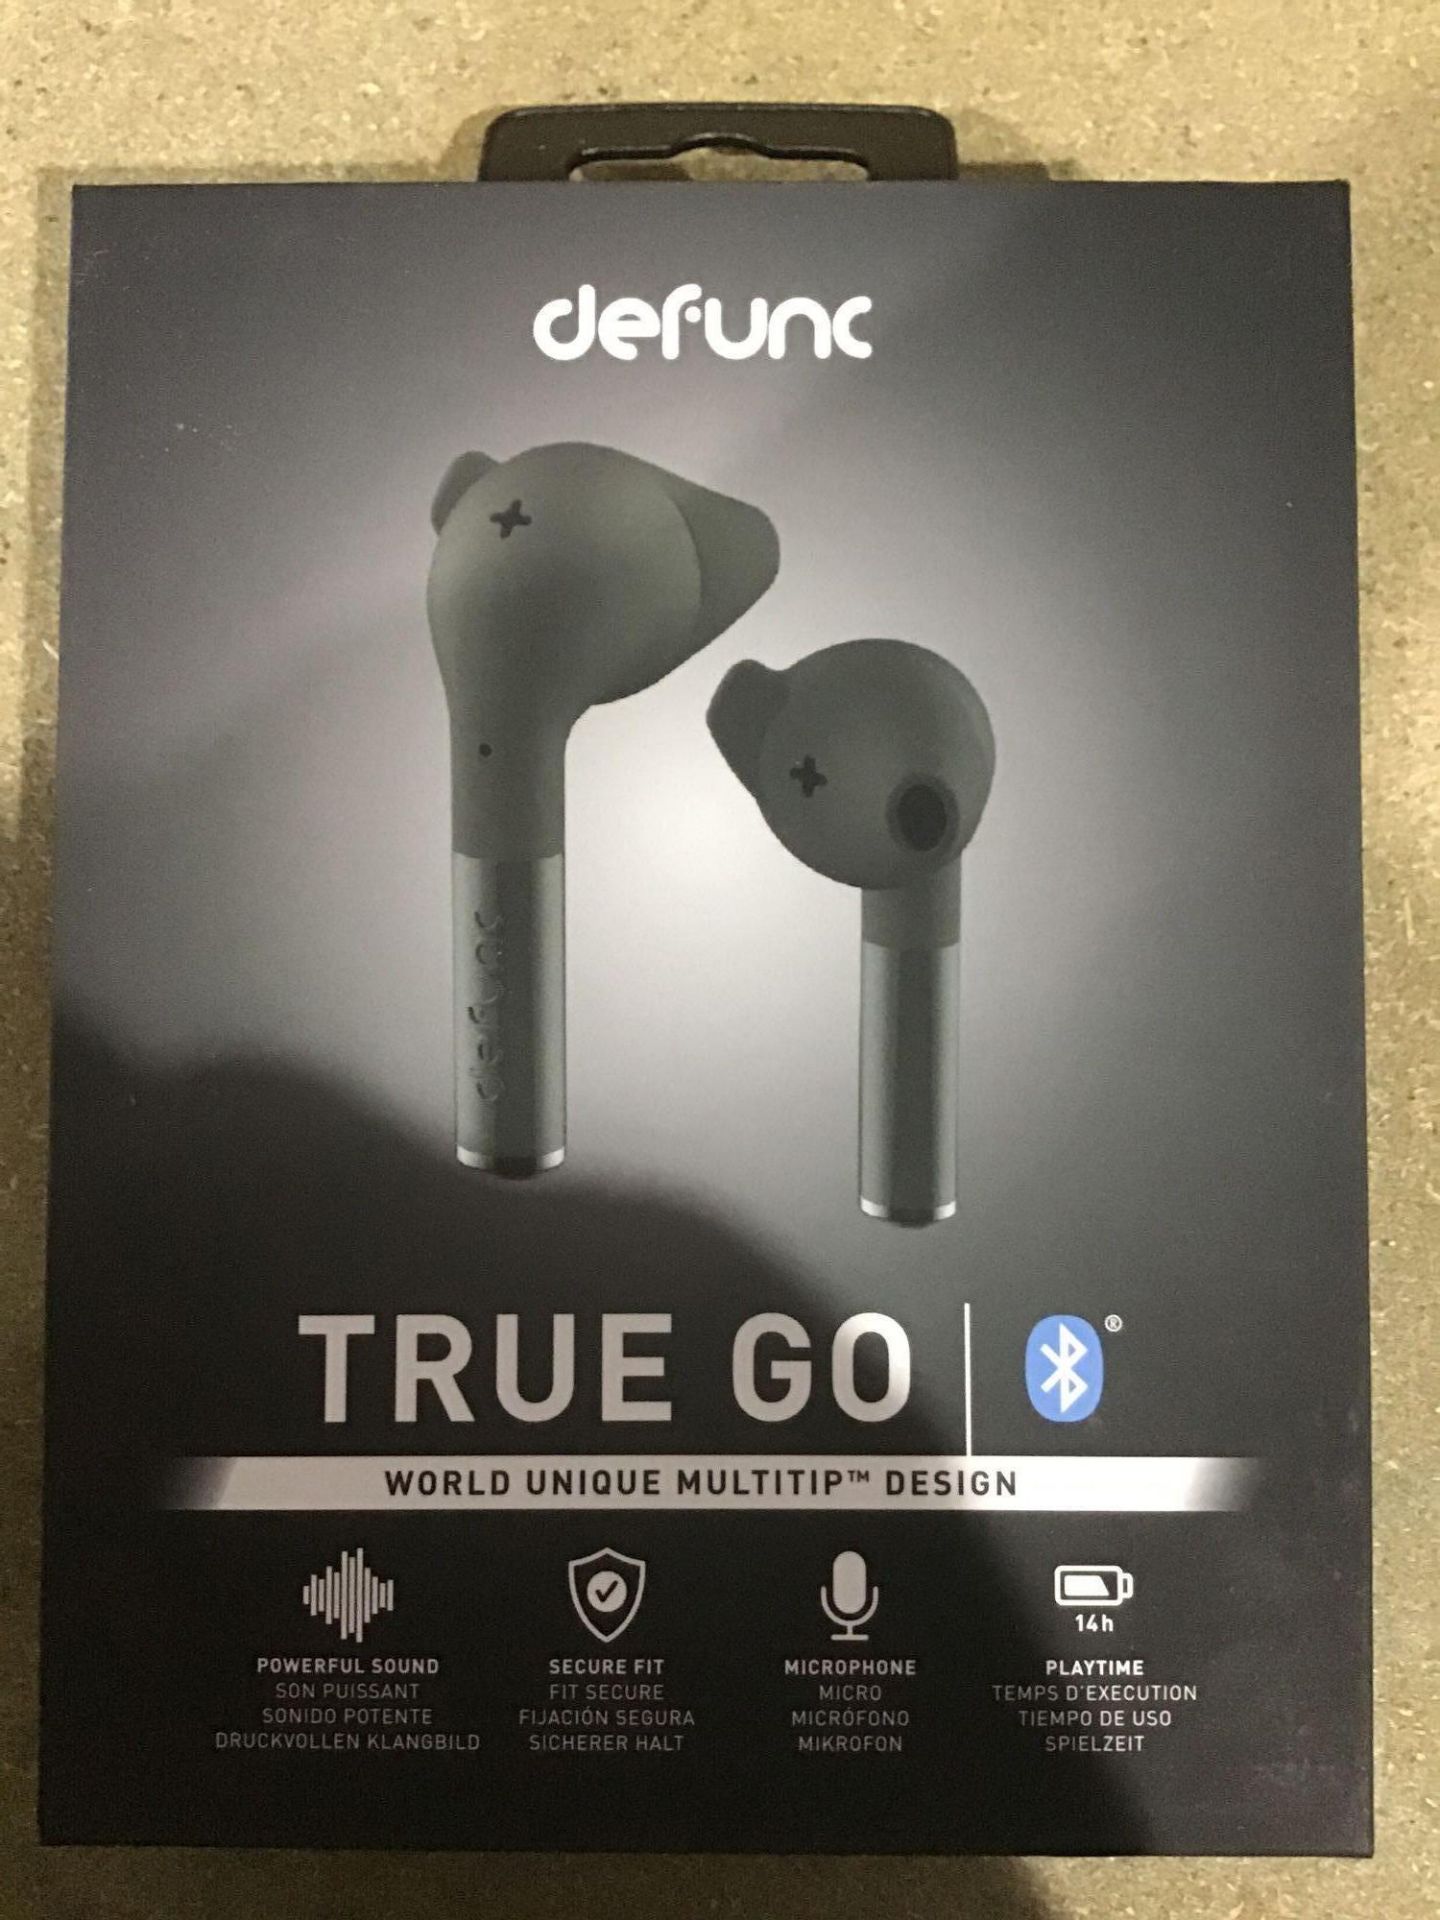 Defunc True Go Wireless Earphones with Dual Mic's-Type C Charging-5.0 Bluetooth Headphones - Image 4 of 6